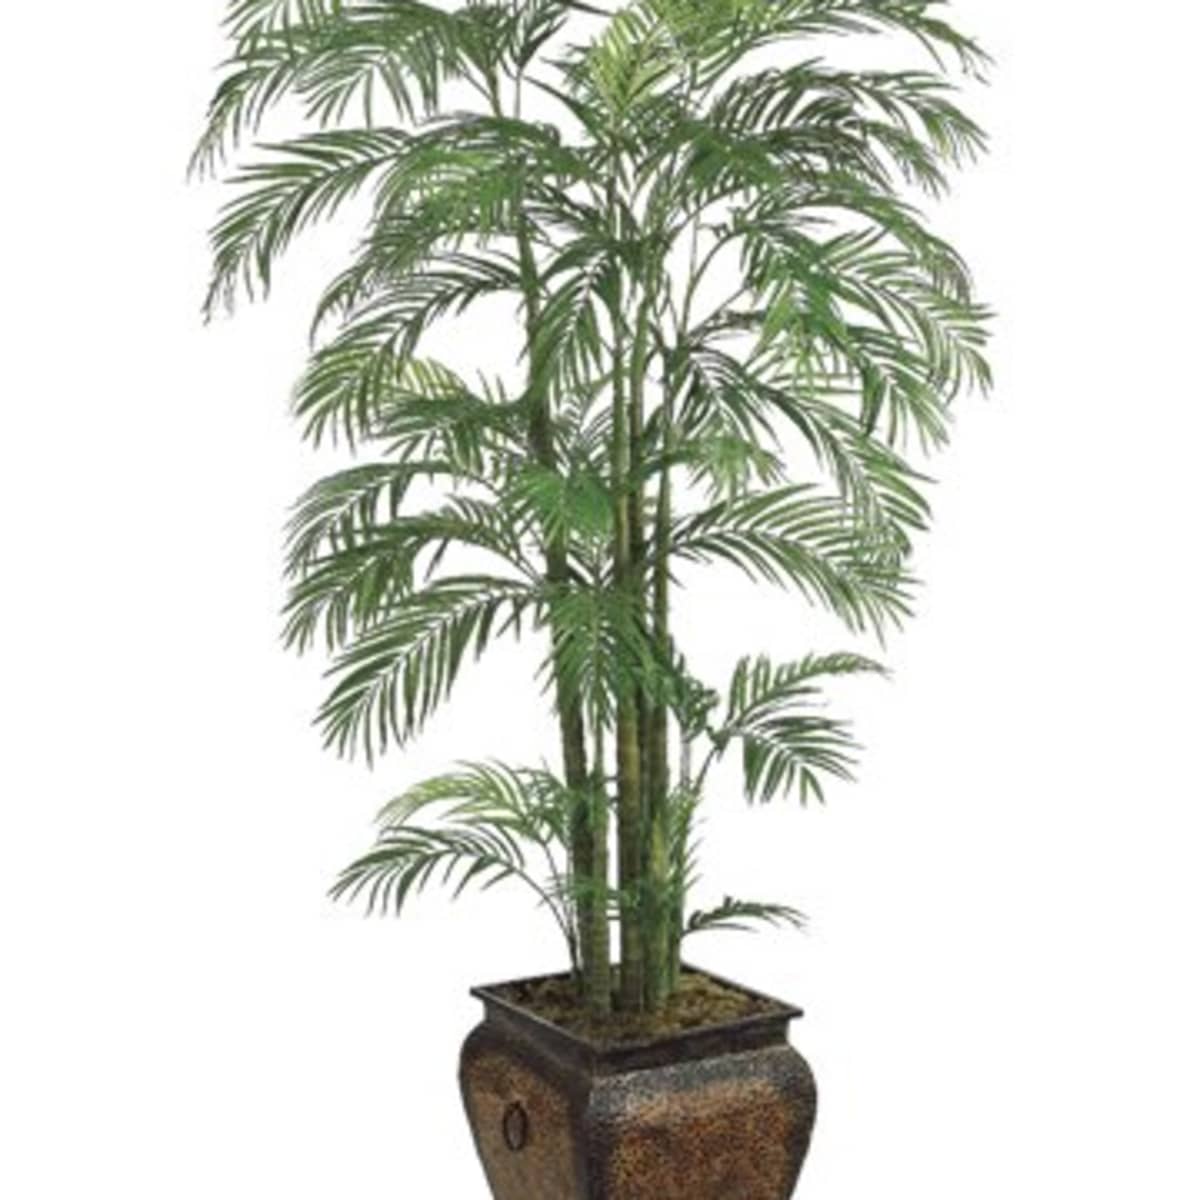 3 ARTIFICIAL 3' PHOENIX PALM TREE PLANT SILK BUSH POOL PATIO DECK ARRANGEMENT 